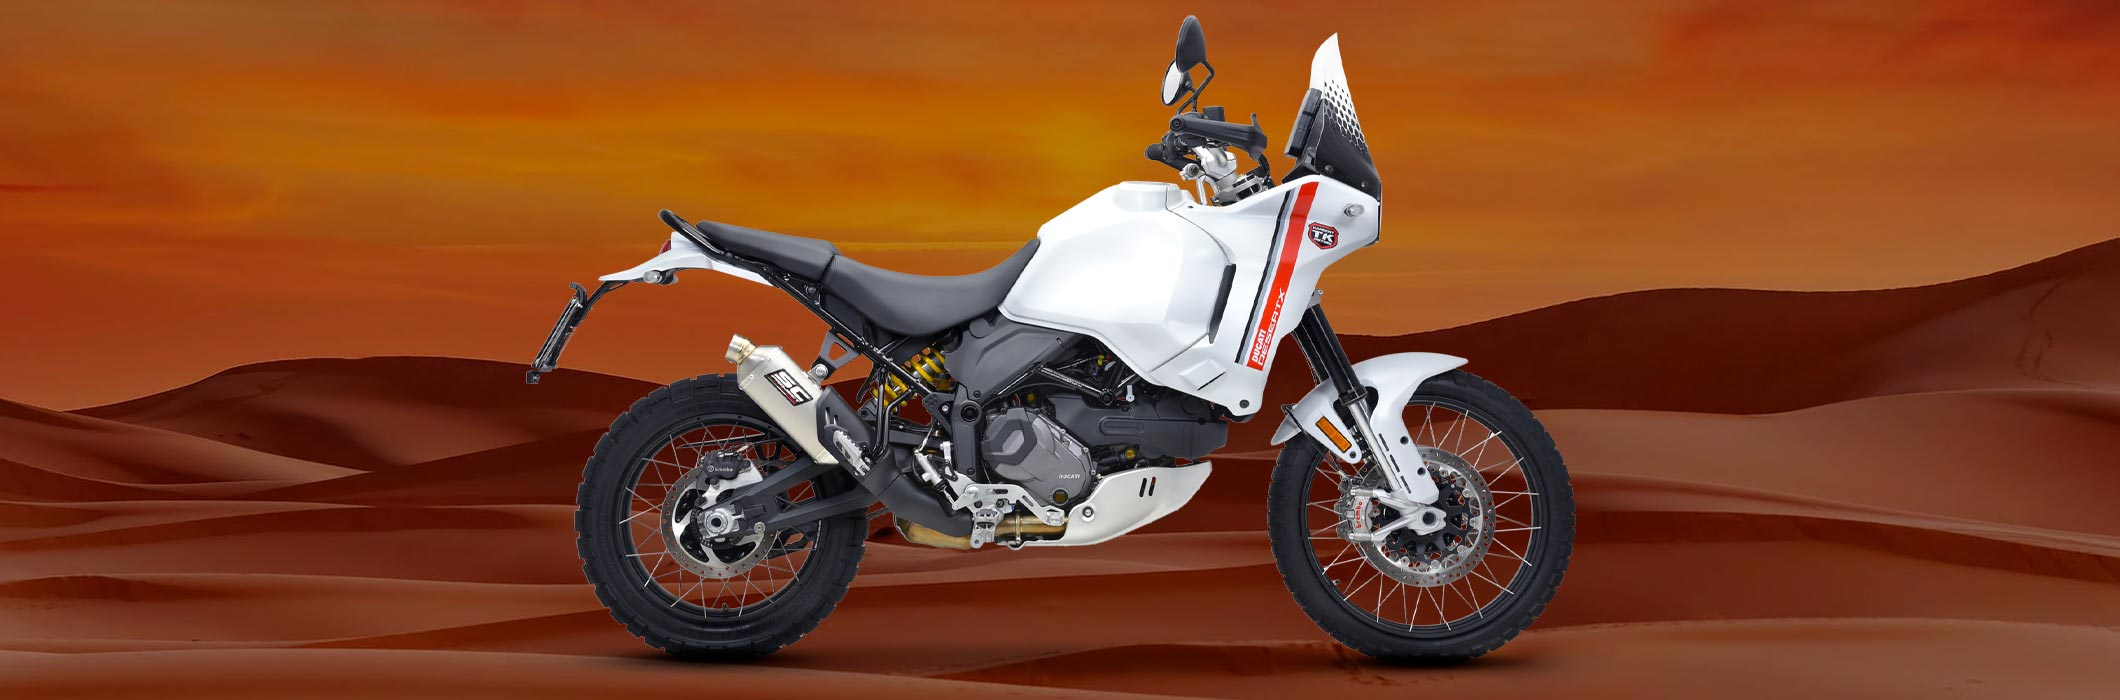 Ducati DesertX Banner News 2120x700 px